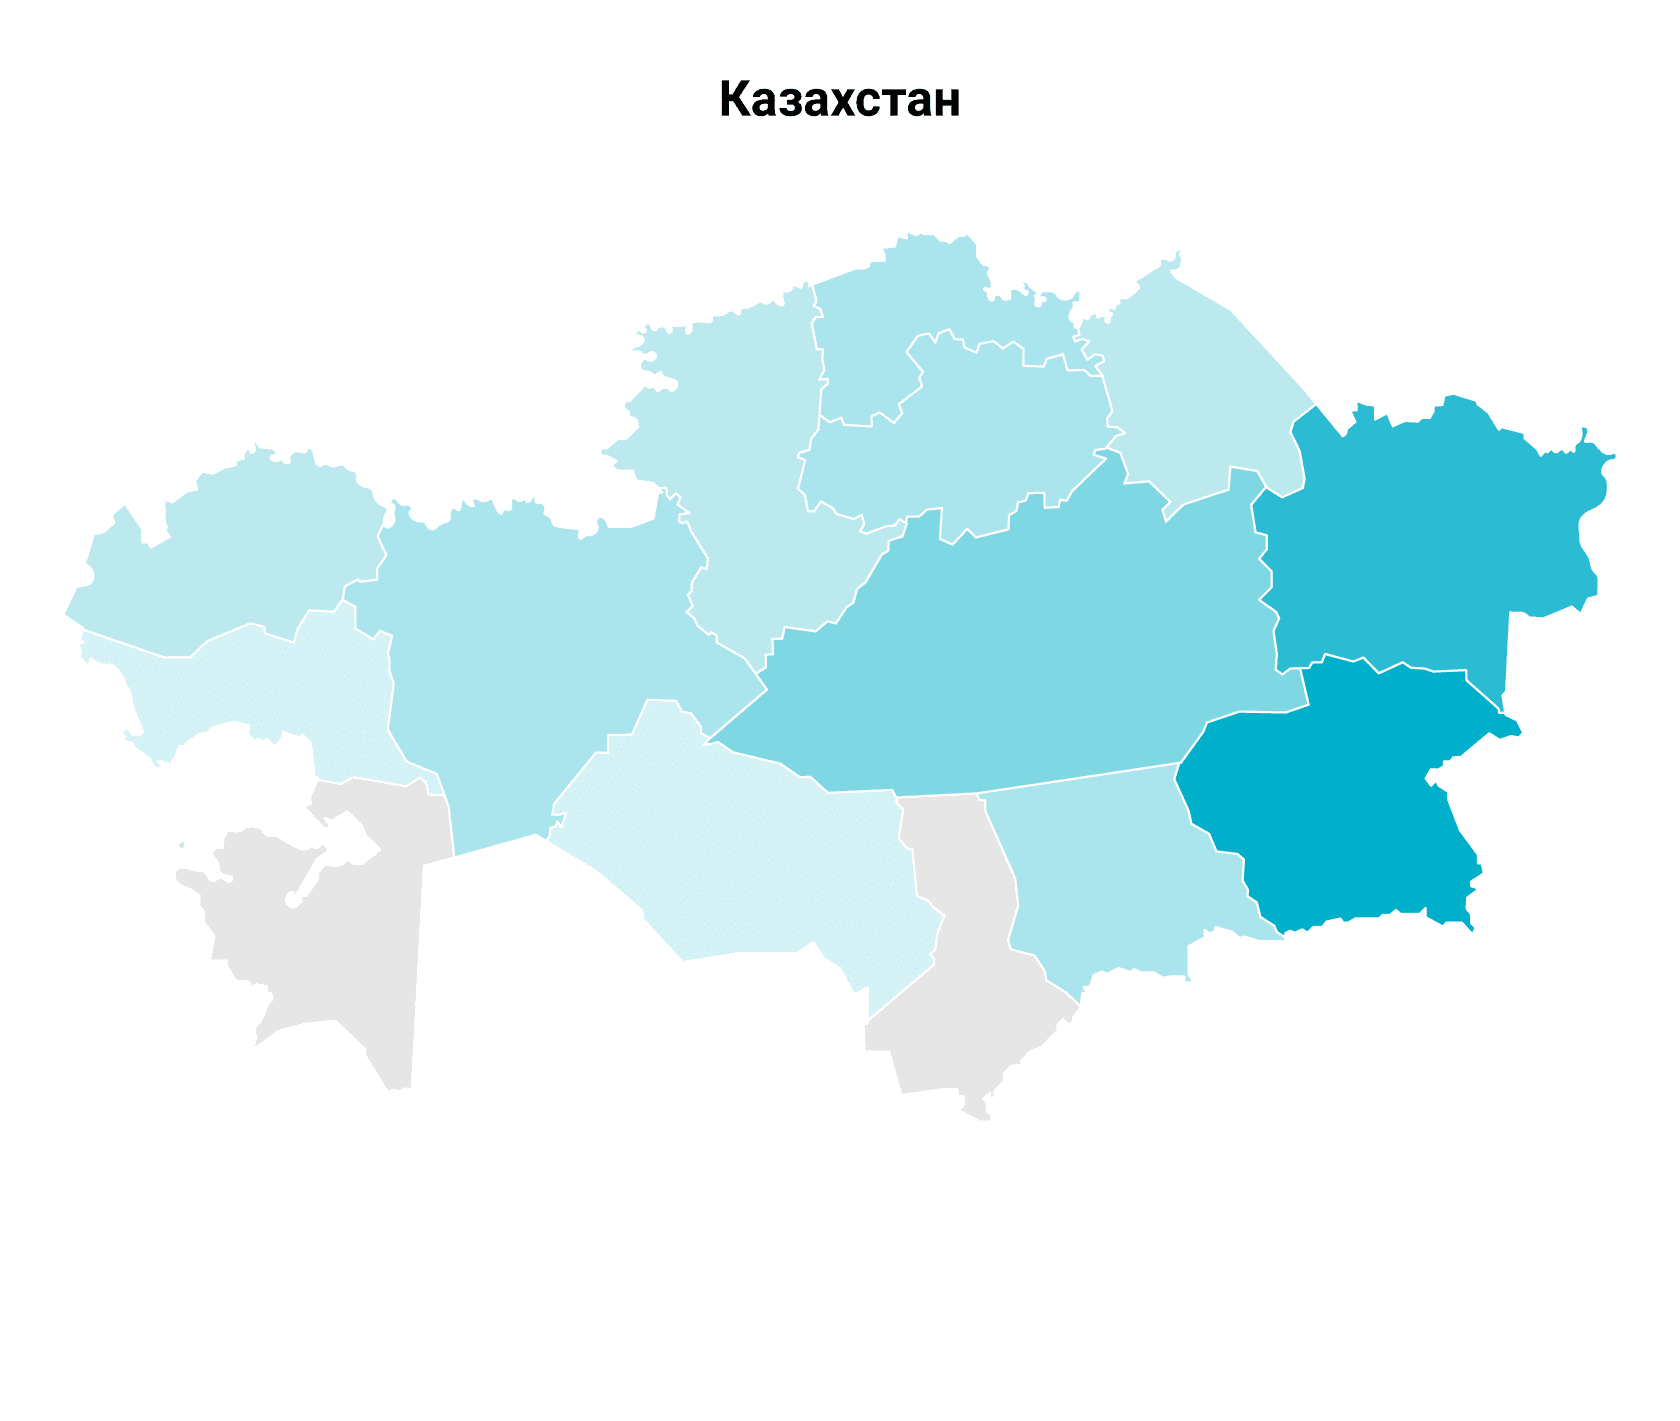 Животноводство. Основные регионы производства. Казахстан